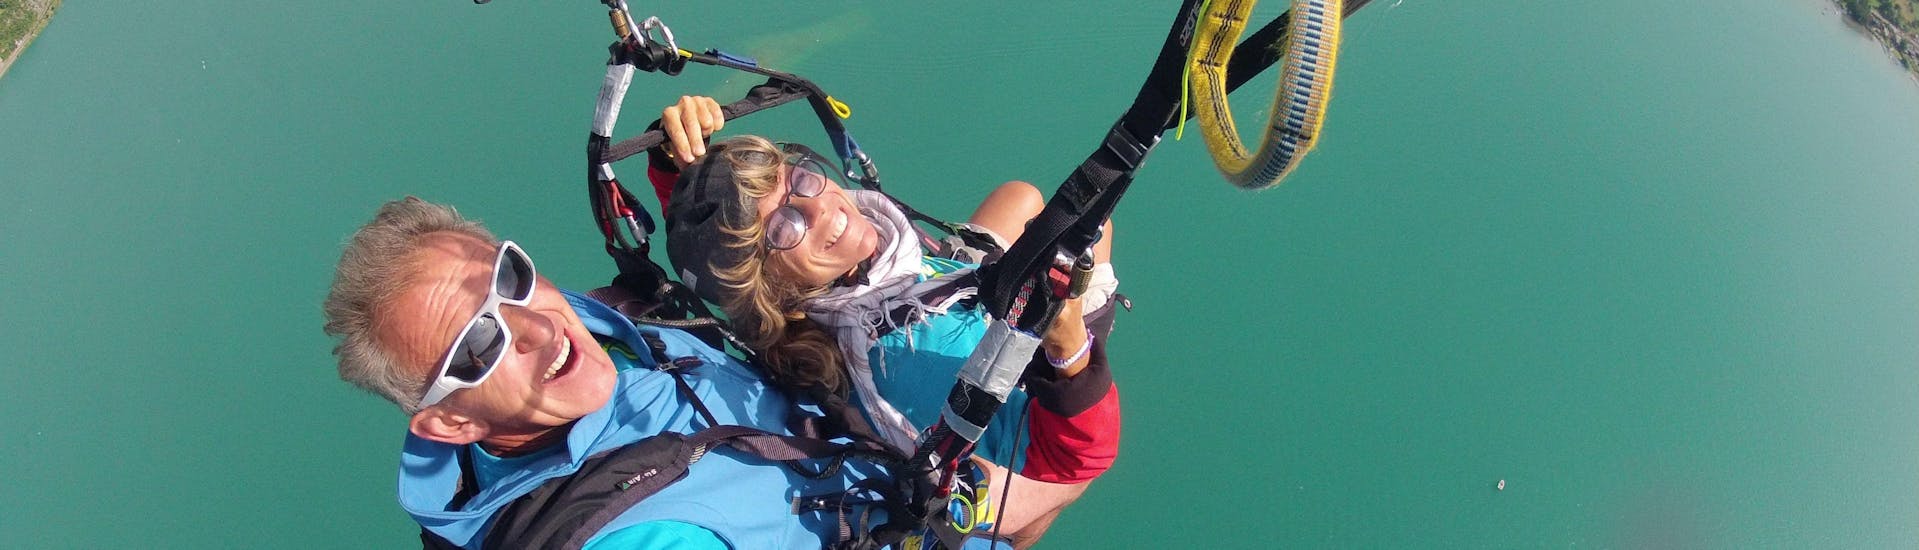 Una persona partecipa al volo in parapendio biposto sul lago di Annecy - opzione Prestige, con FBI Parapente.